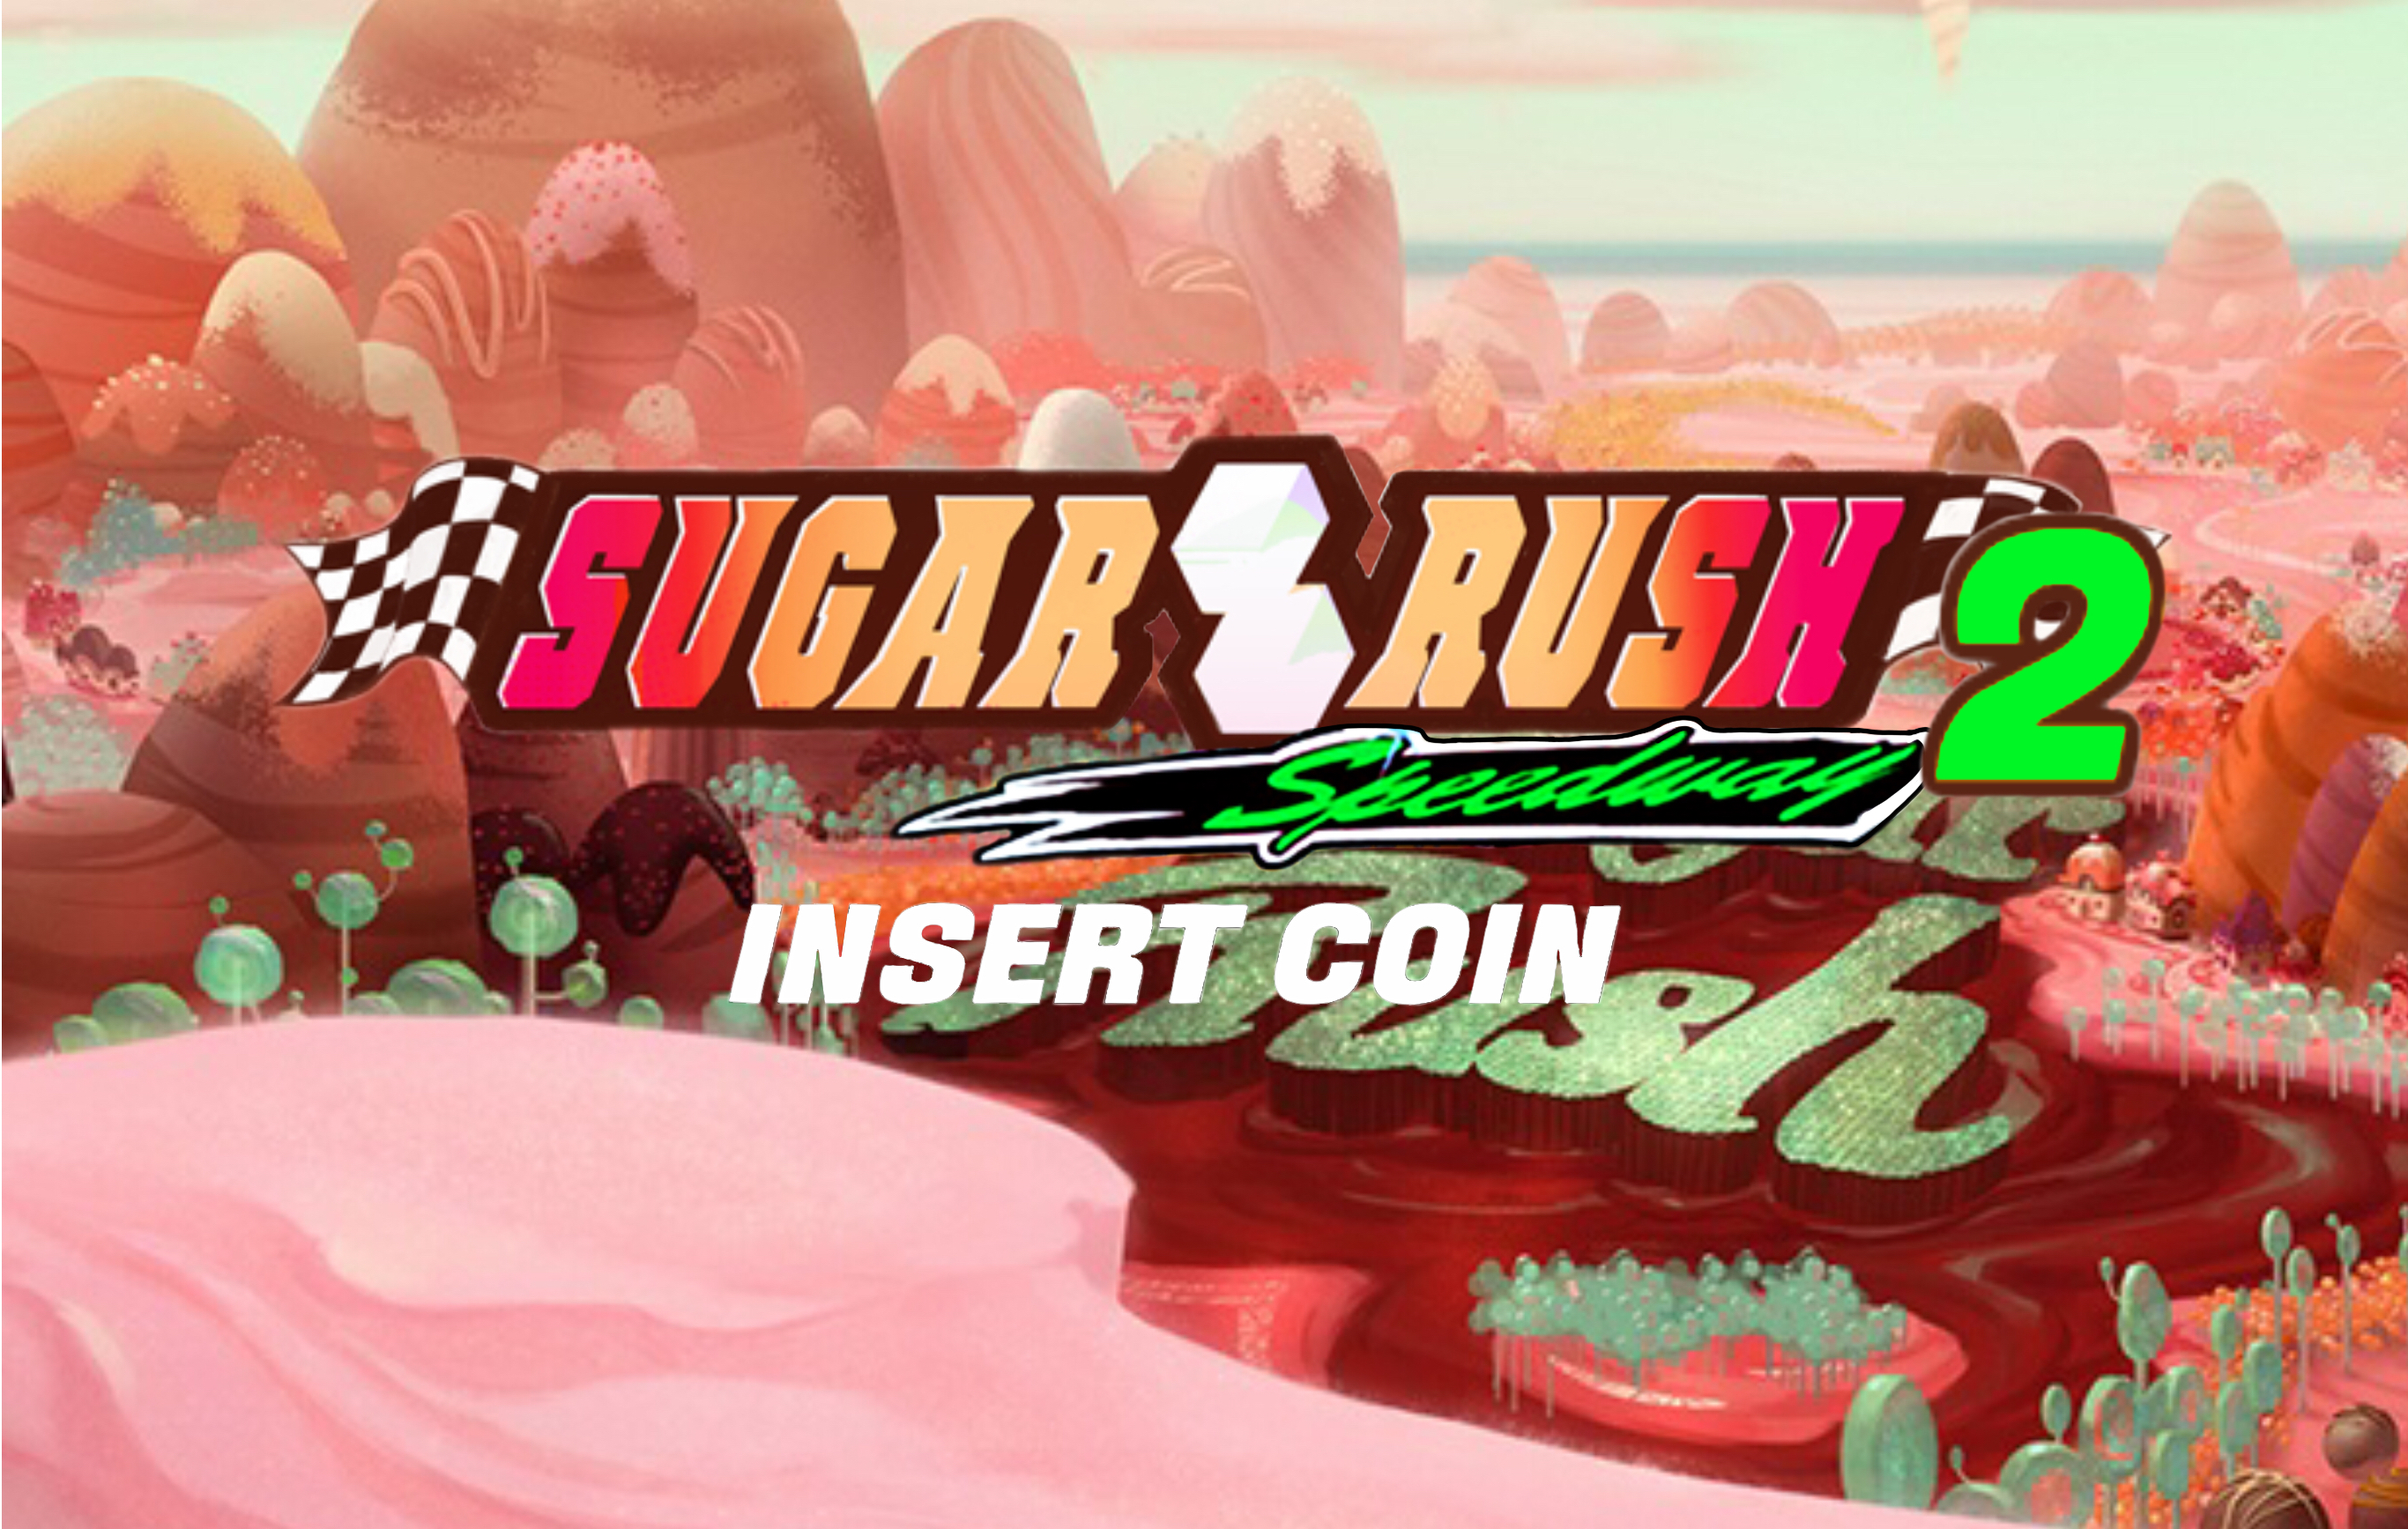 Sugar Rush Speedway Game